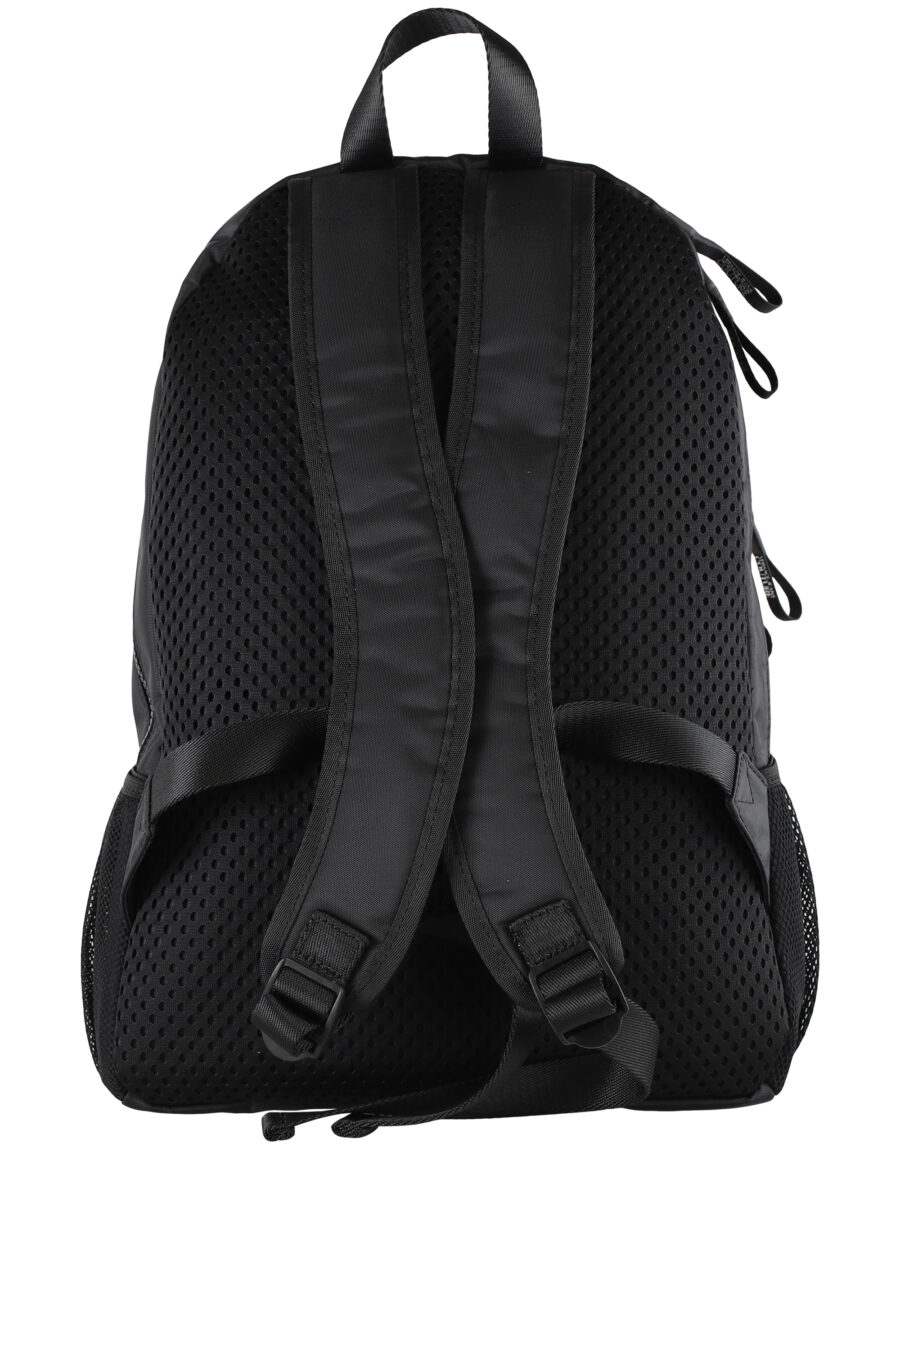 Black backpack with maxilogo - IMG 5131